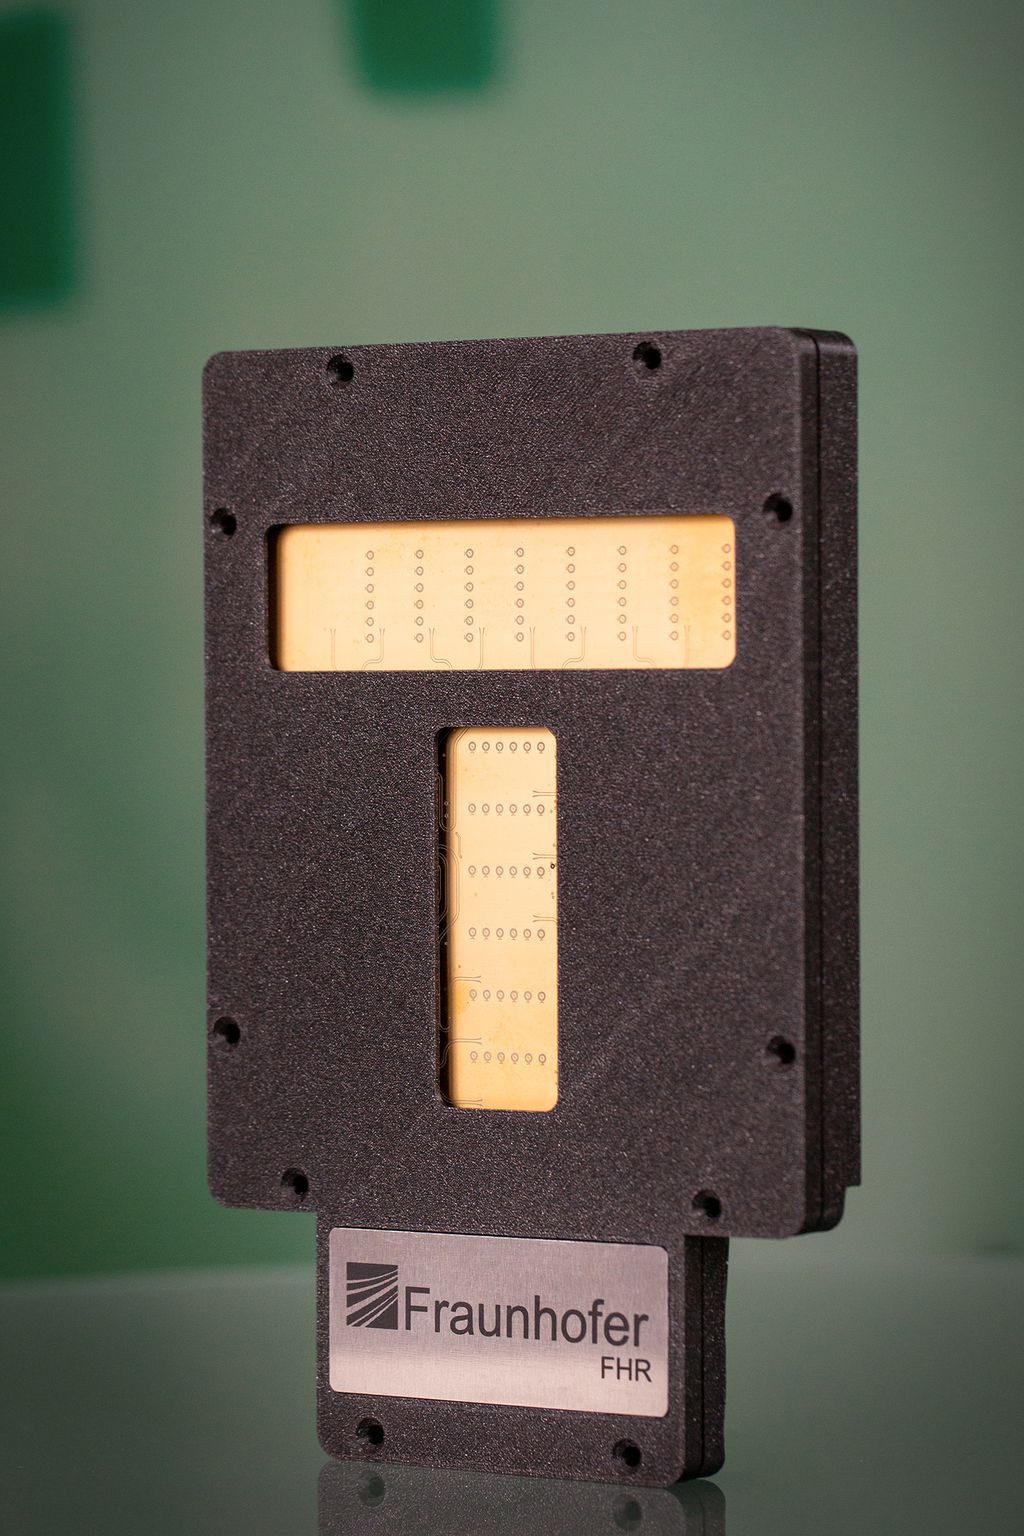 Sensor capaz de detectar movimentação de pedestres (Imagem: Reprodução/Fraunhofer-Gesellschaft)